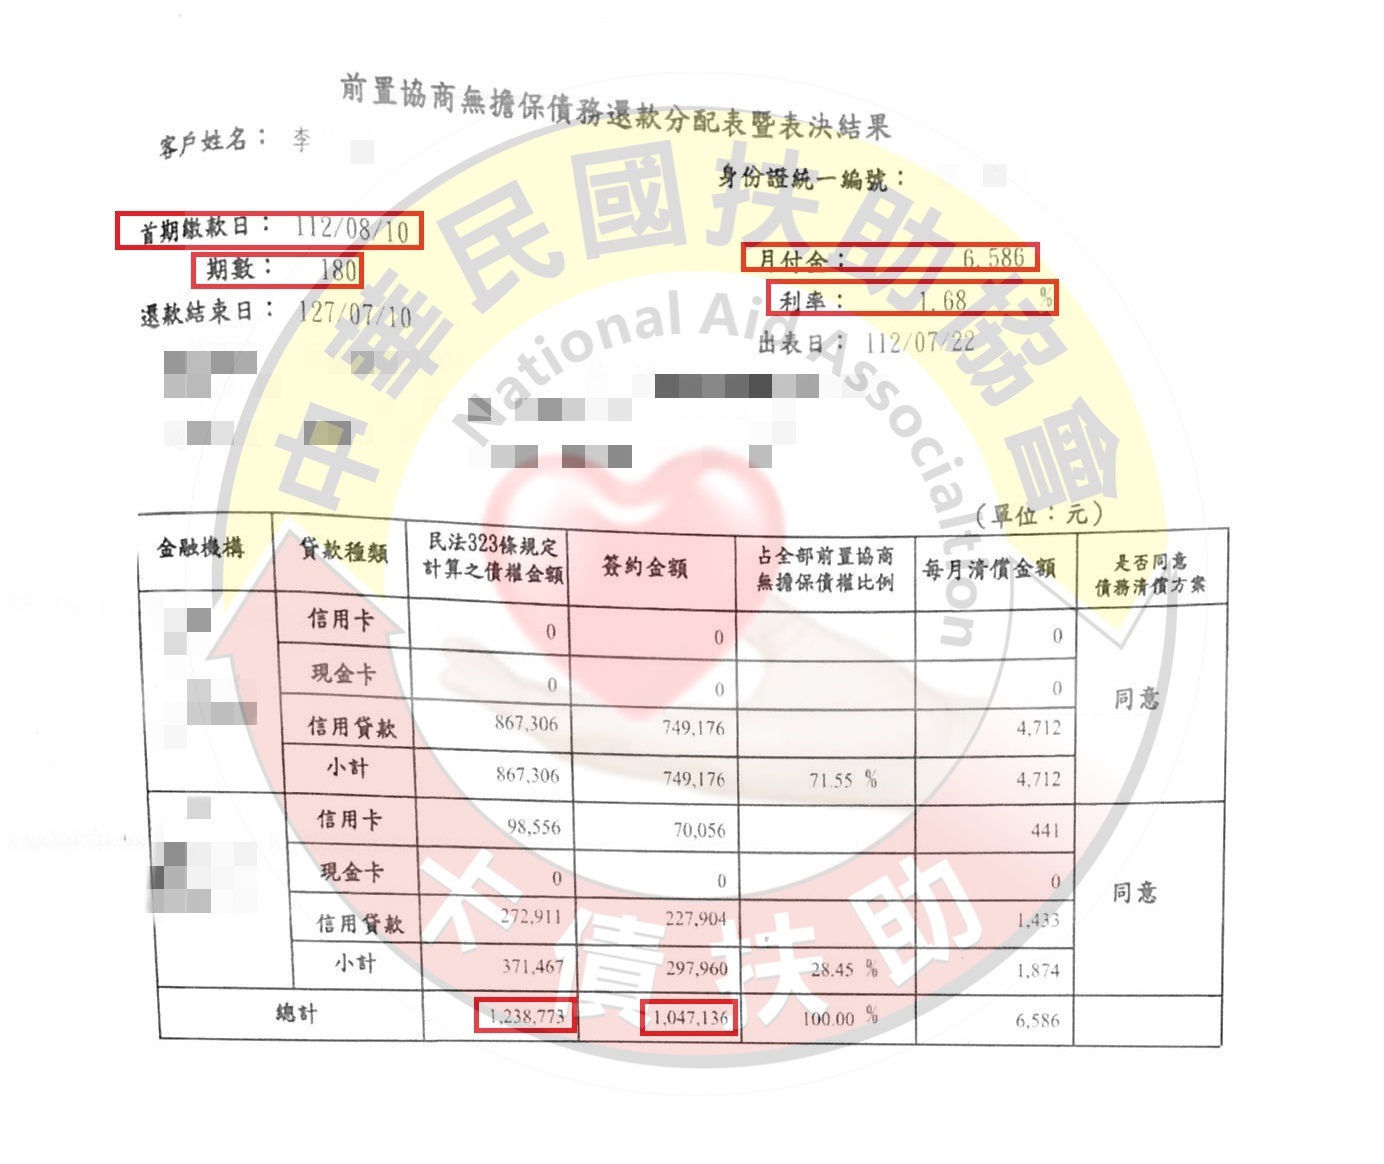 台南李先生/協商成功/原月付39,700元/協議180期3%月付6,586元	